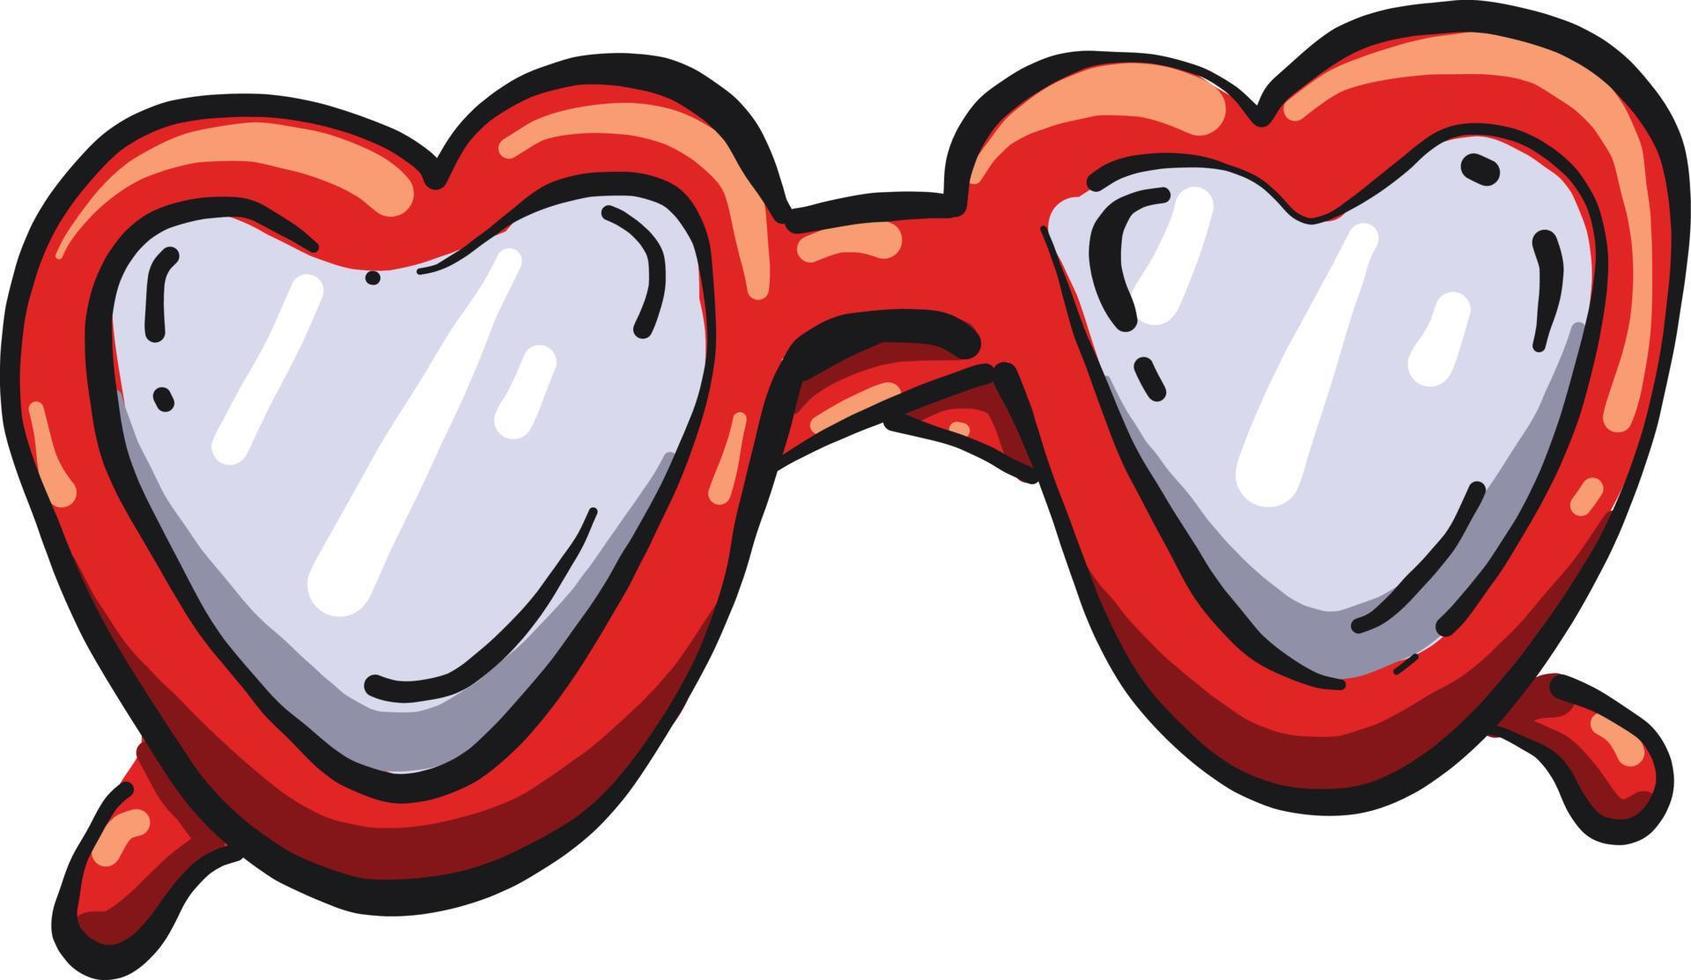 Red heart glasses, illustration, vector on white background.